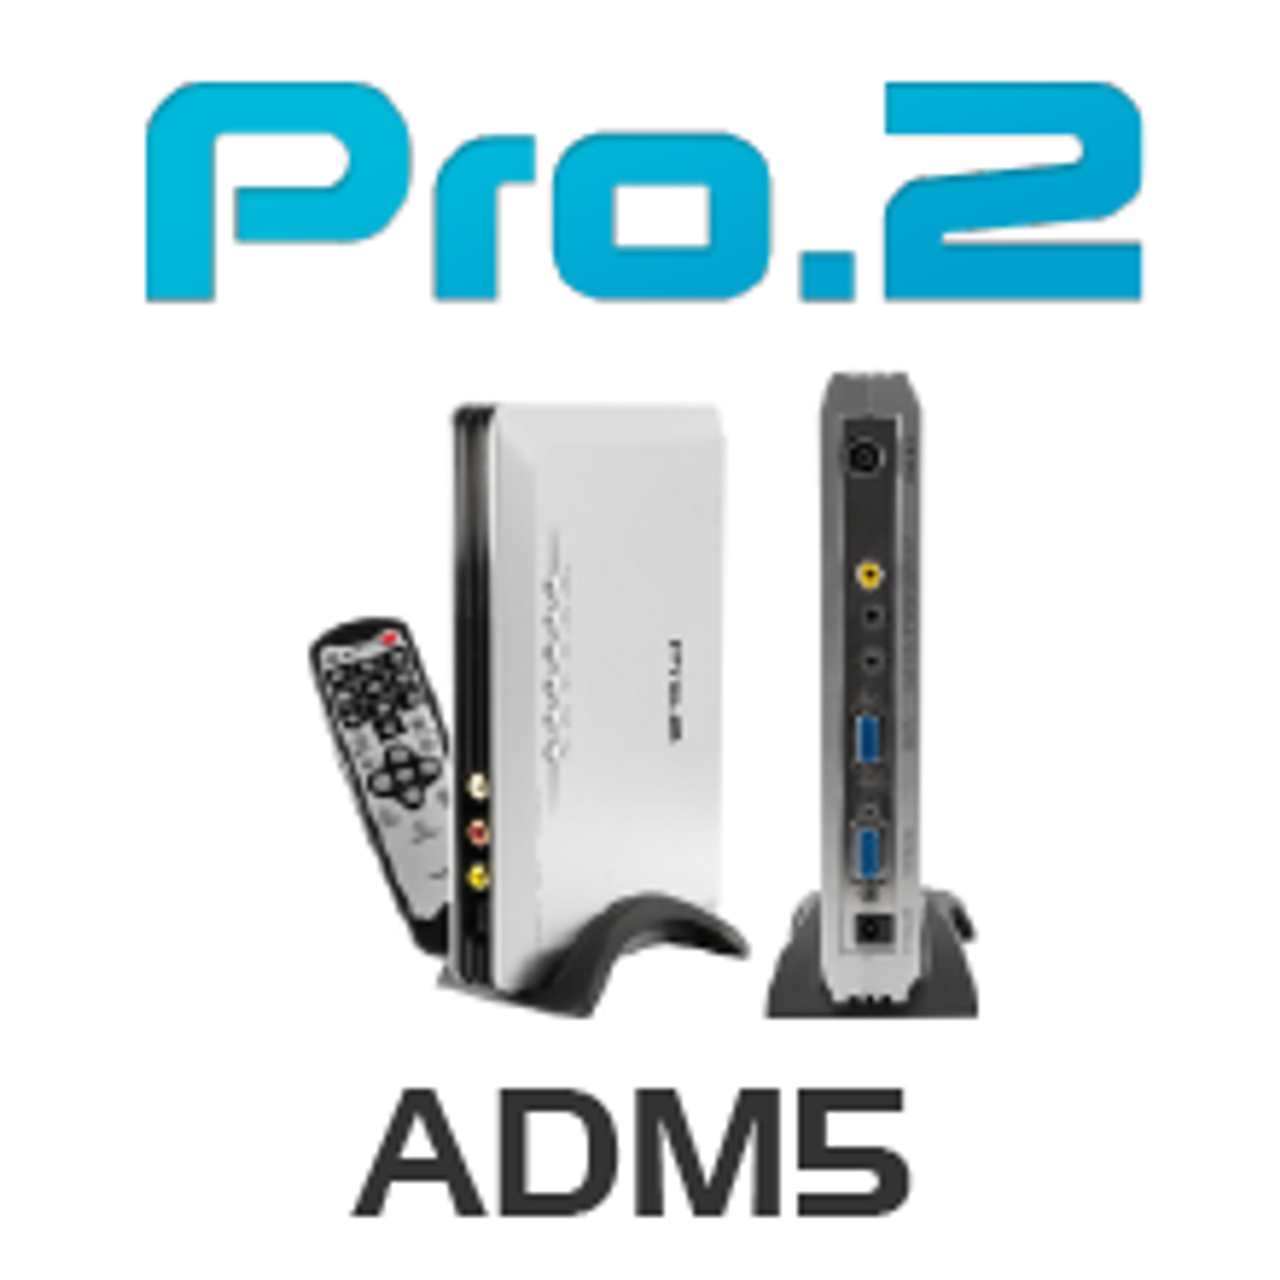 Pro.2 ADM5 Analogue De-modulator